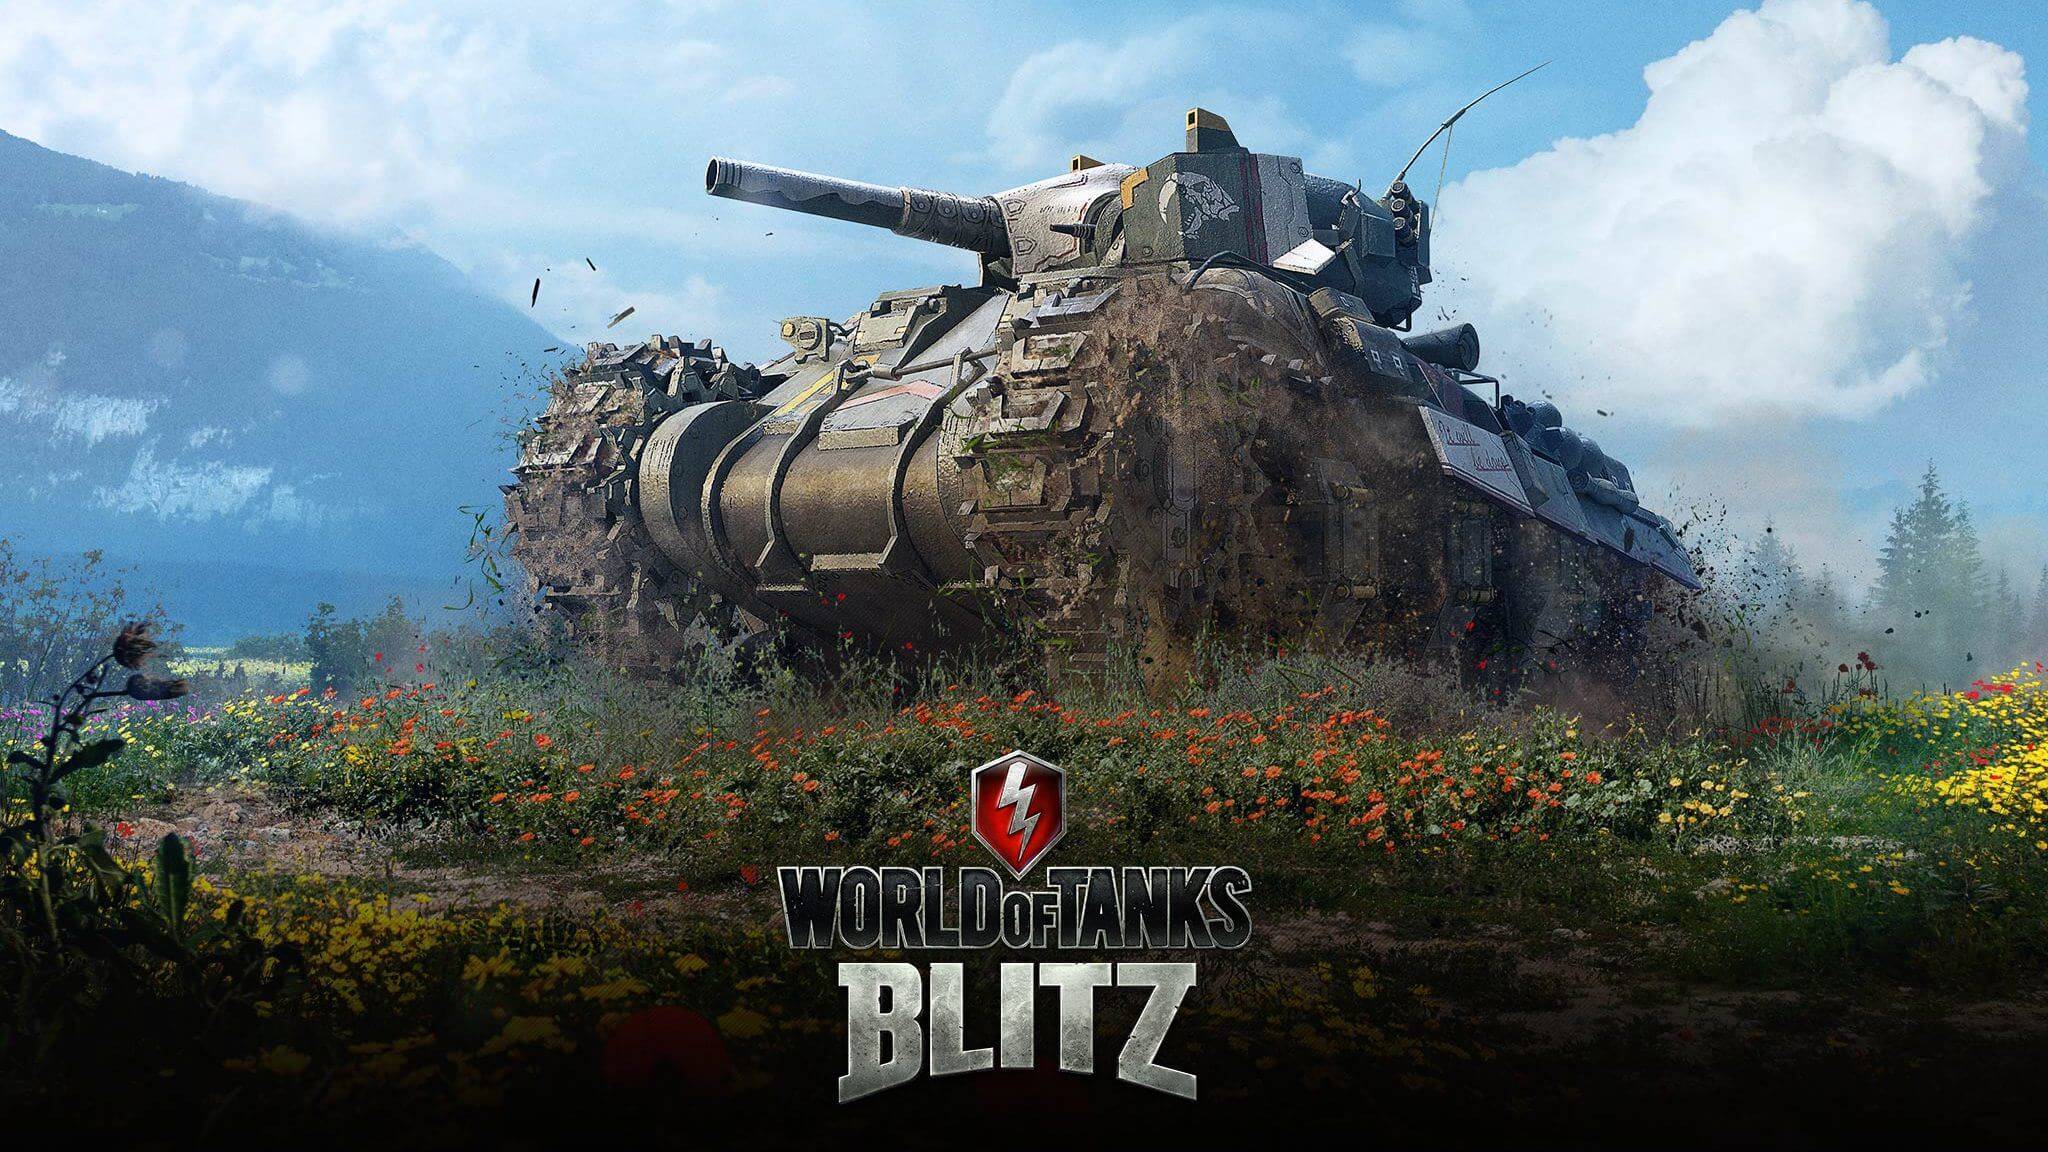 world of tanks blitz mobile bonus codes 2021